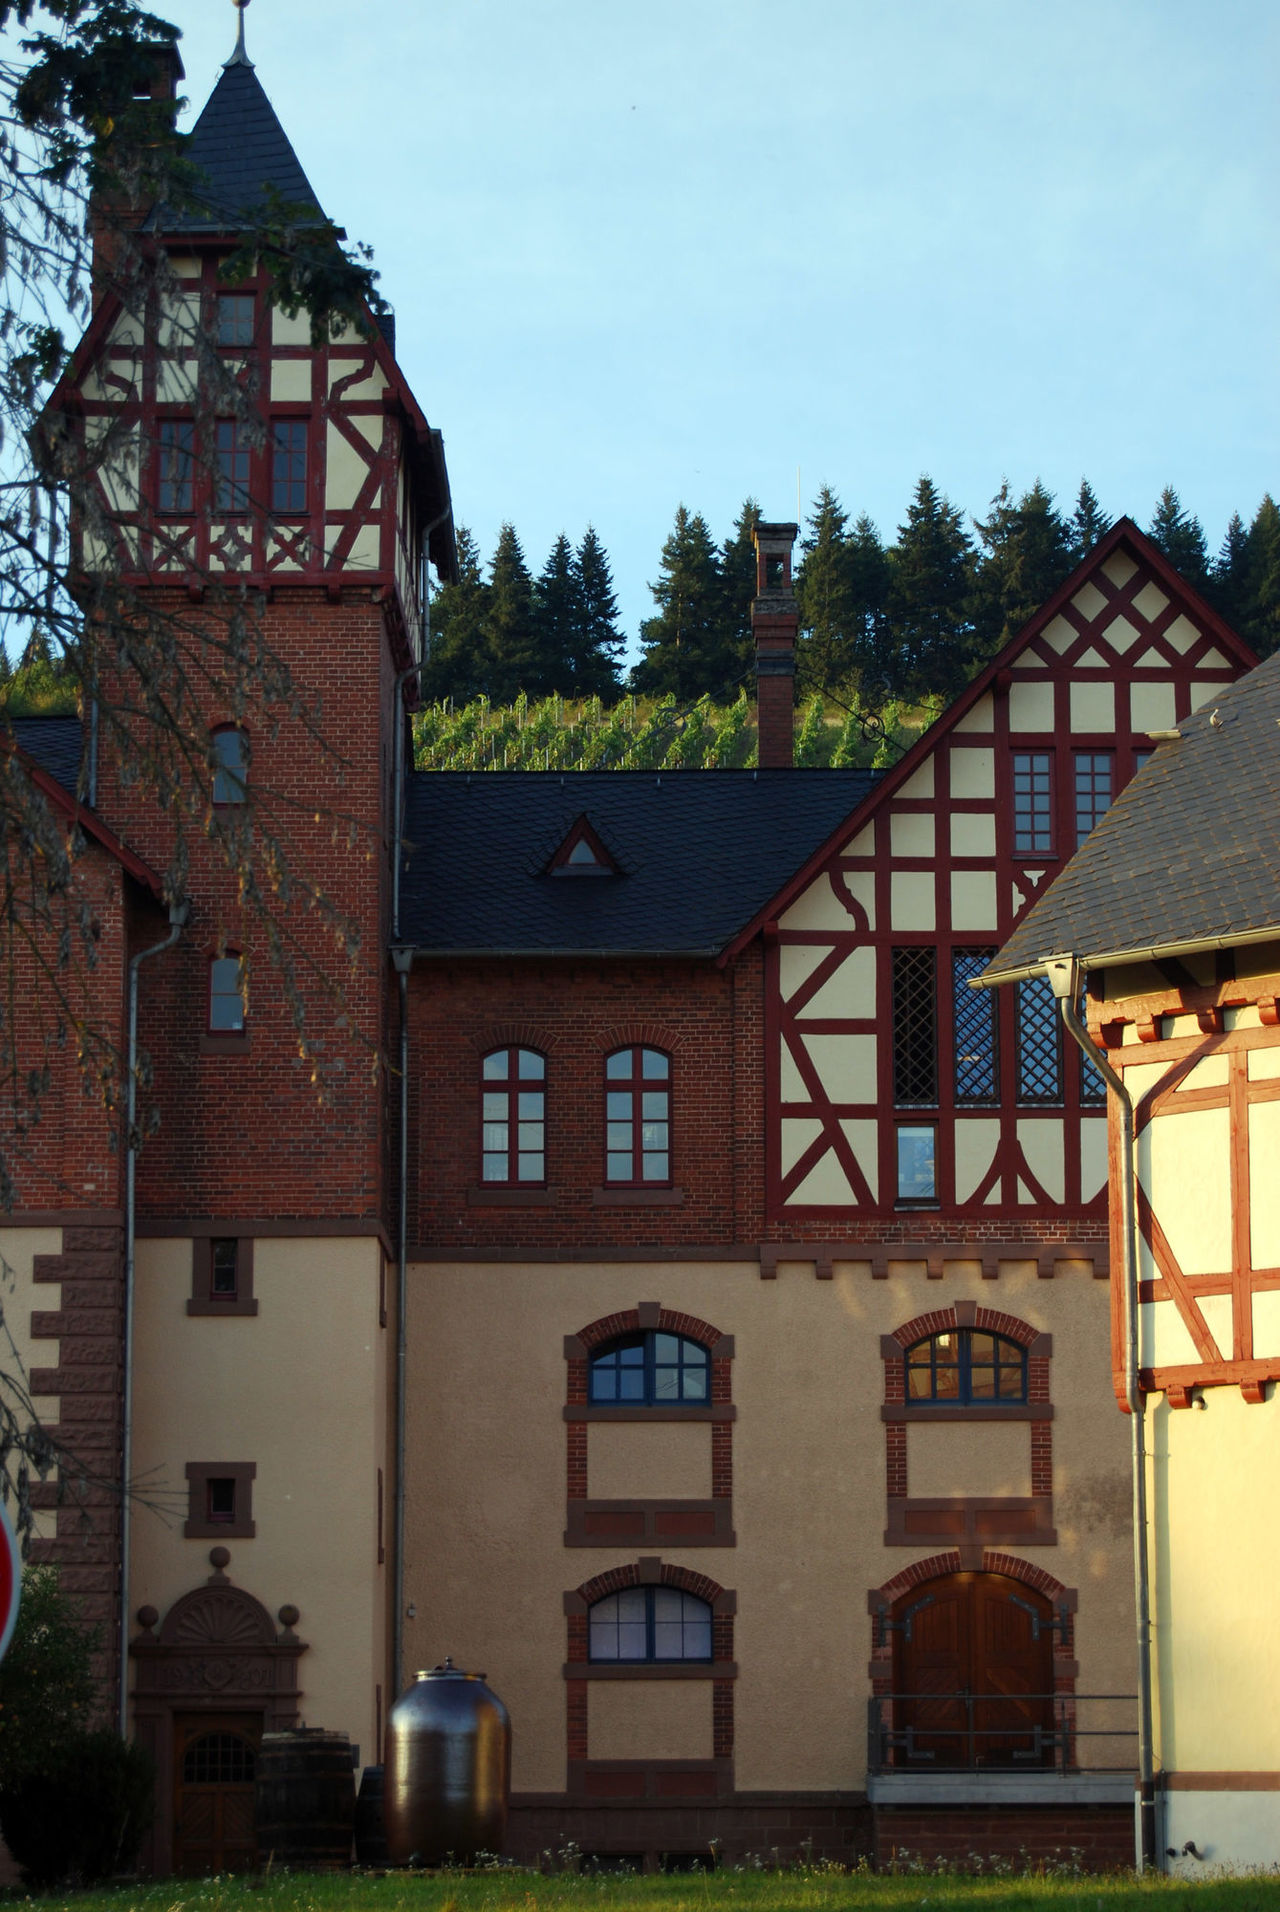 Blick von vorne auf die Domäne Avelsbach mit ihrer Fassade aus Fachwerk und Mauerwerk.